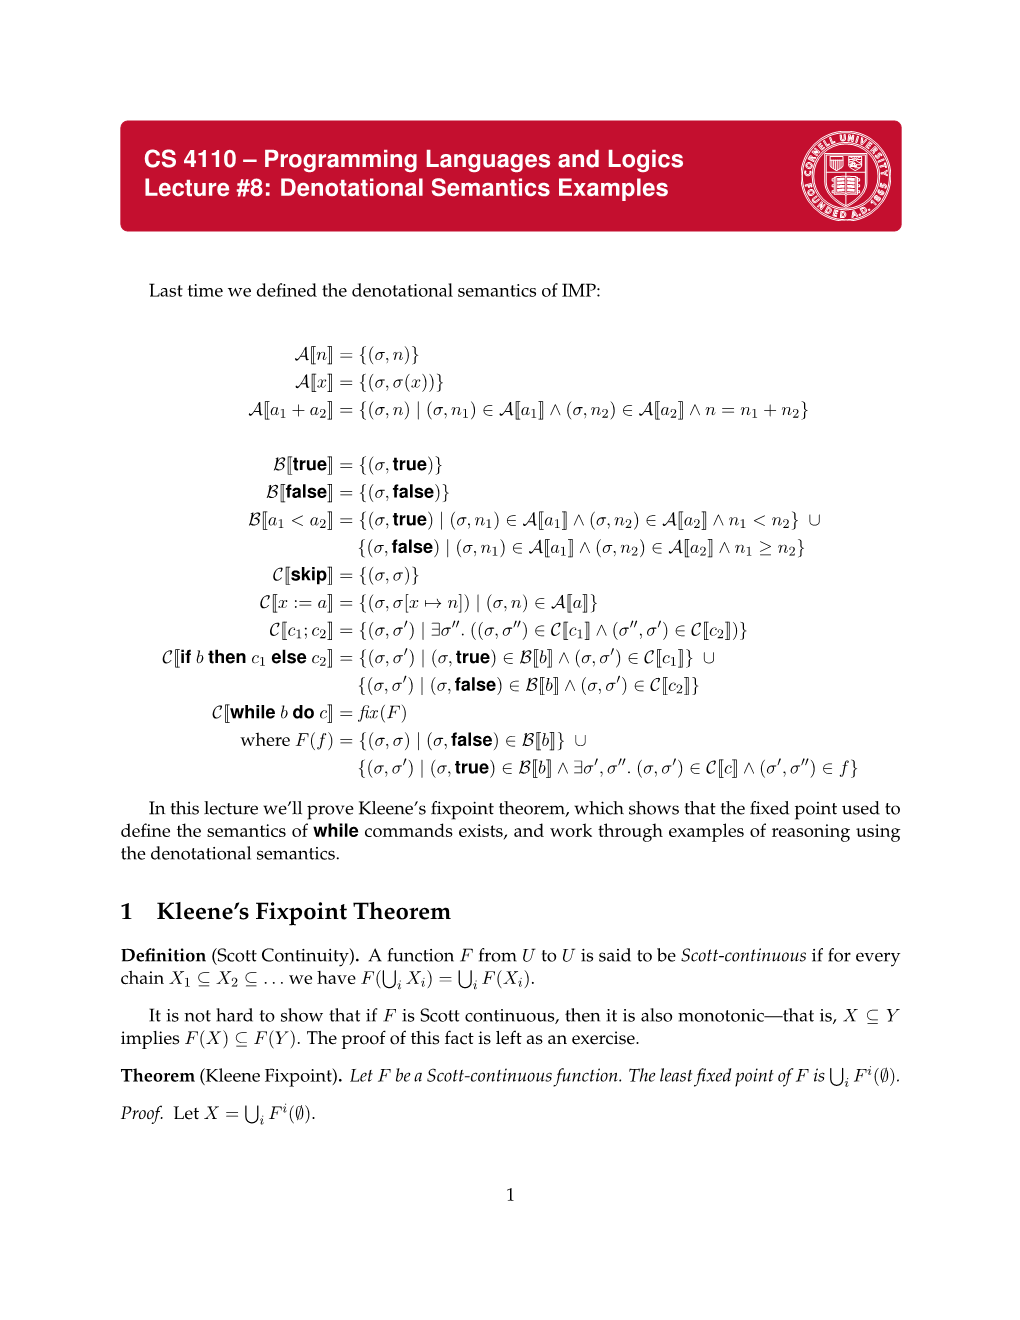 CS 4110 – Programming Languages and Logics Lecture #8: Denotational Semantics Examples